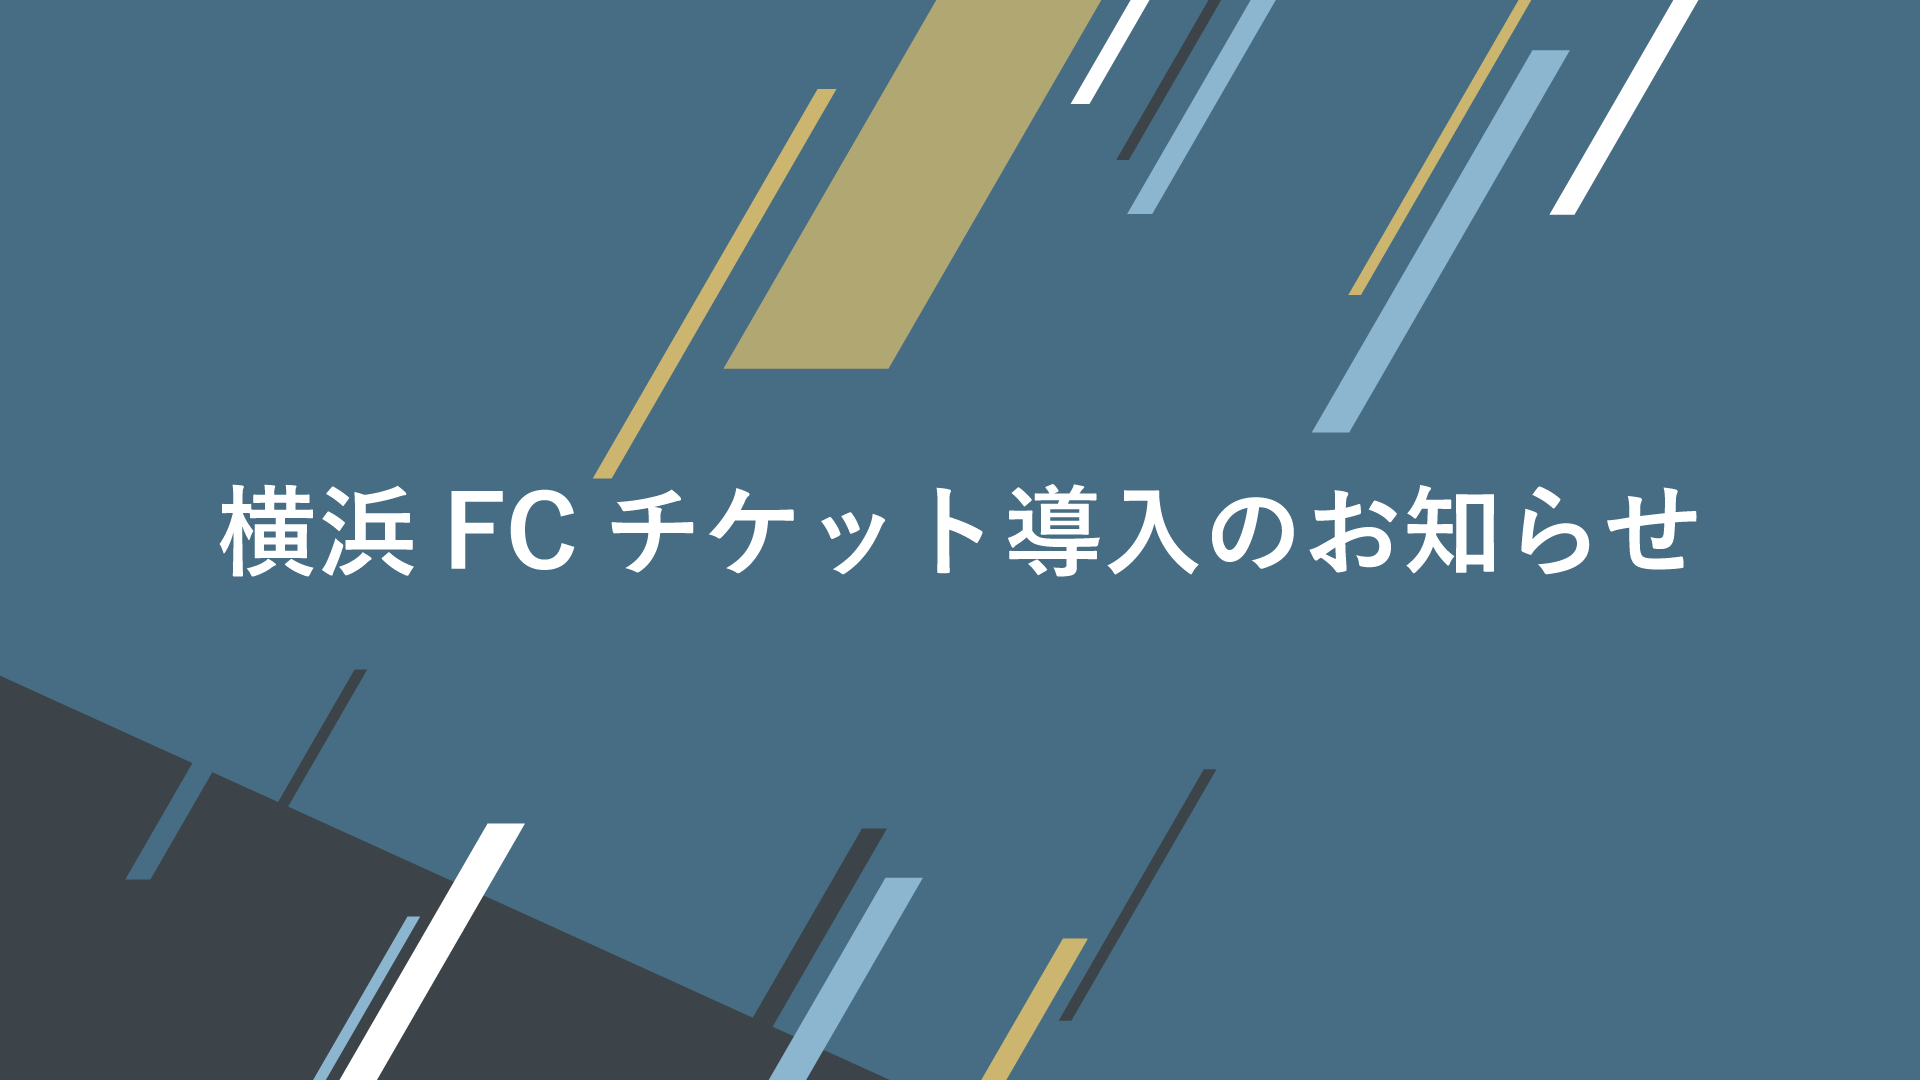 横浜fcチケット導入のお知らせ 横浜fcオフィシャルウェブサイト